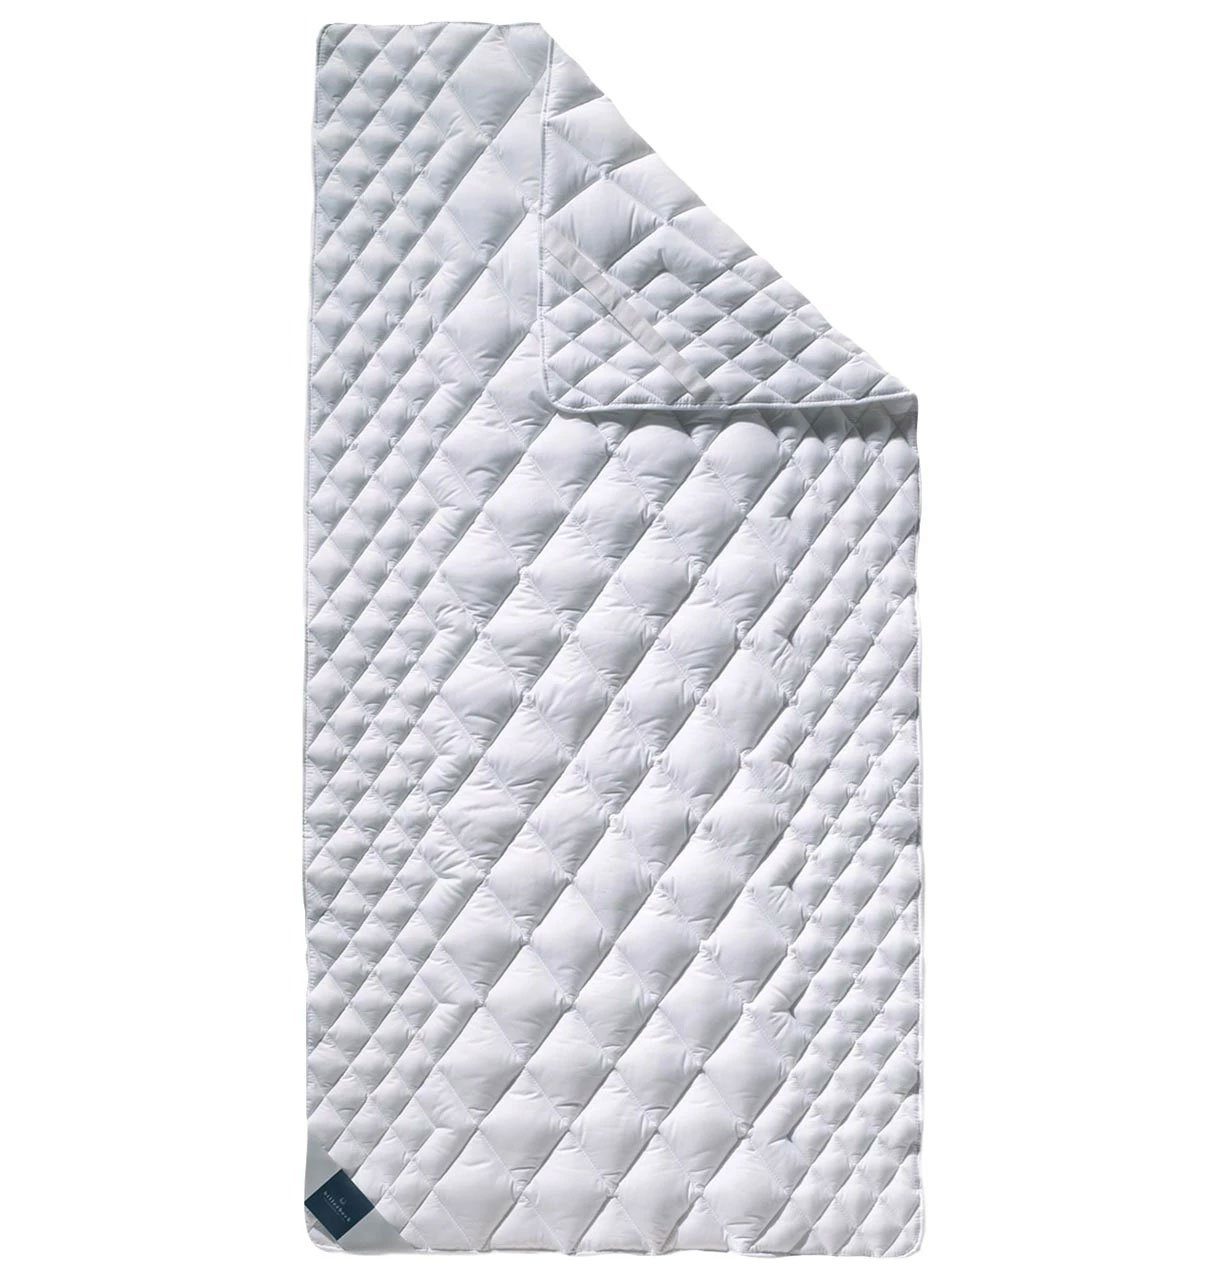 Matratze Gummibänder Ecken Matratzenfixierung die den Schont Gute Matratzenauflage Baumwolle | billerbeck, 100% Billerbeck durch Matratzenauflage COTTONELL, an